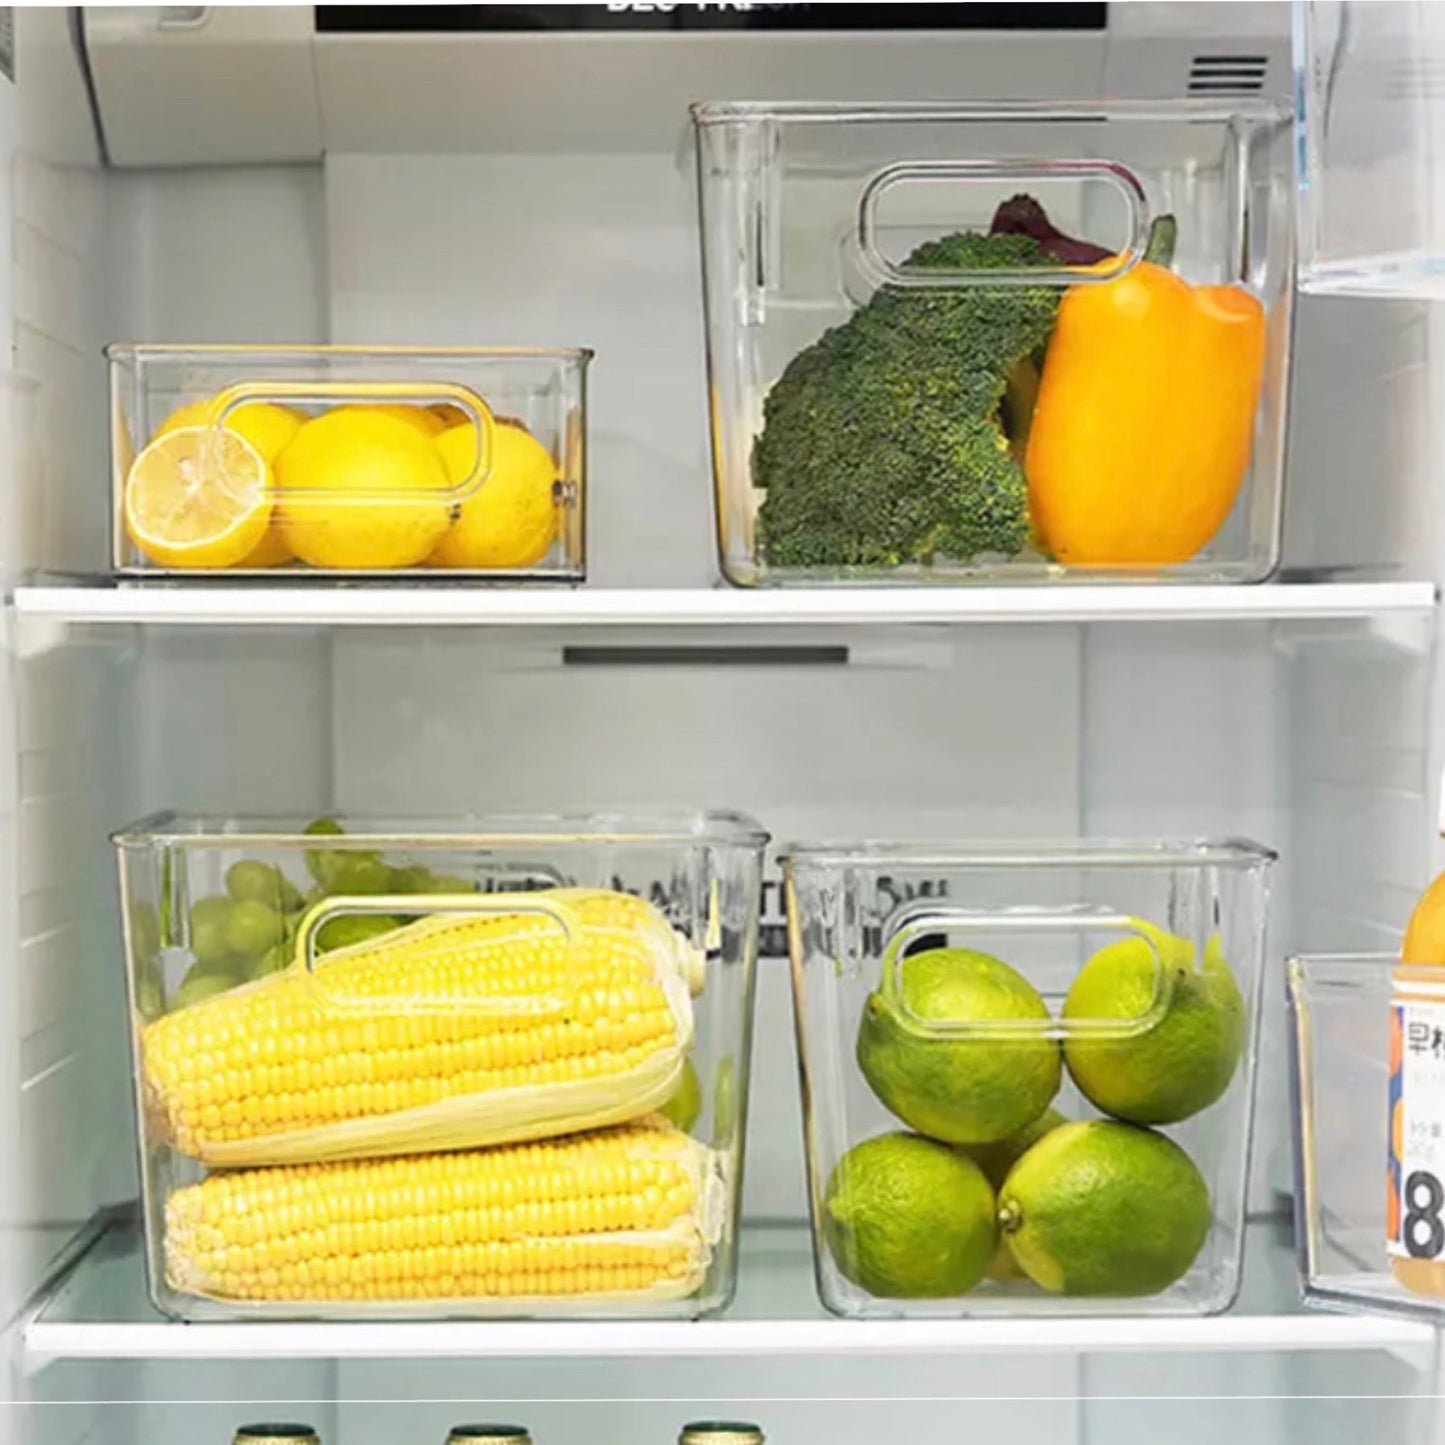 Transparente Aufbewahrungsboxen im Kühlschrank mit verschiedenen Lebensmitteln. Oben links ist eine Box mit Zitronenscheiben und ganzen Zitronen, daneben eine mit Brokkoli und einer gelben Paprika. Unten links befindet sich eine Box mit frischen Maiskolben und rechts daneben eine mit grünen Limetten. Die Anordnung zeigt eine saubere und organisierte Lagerung.